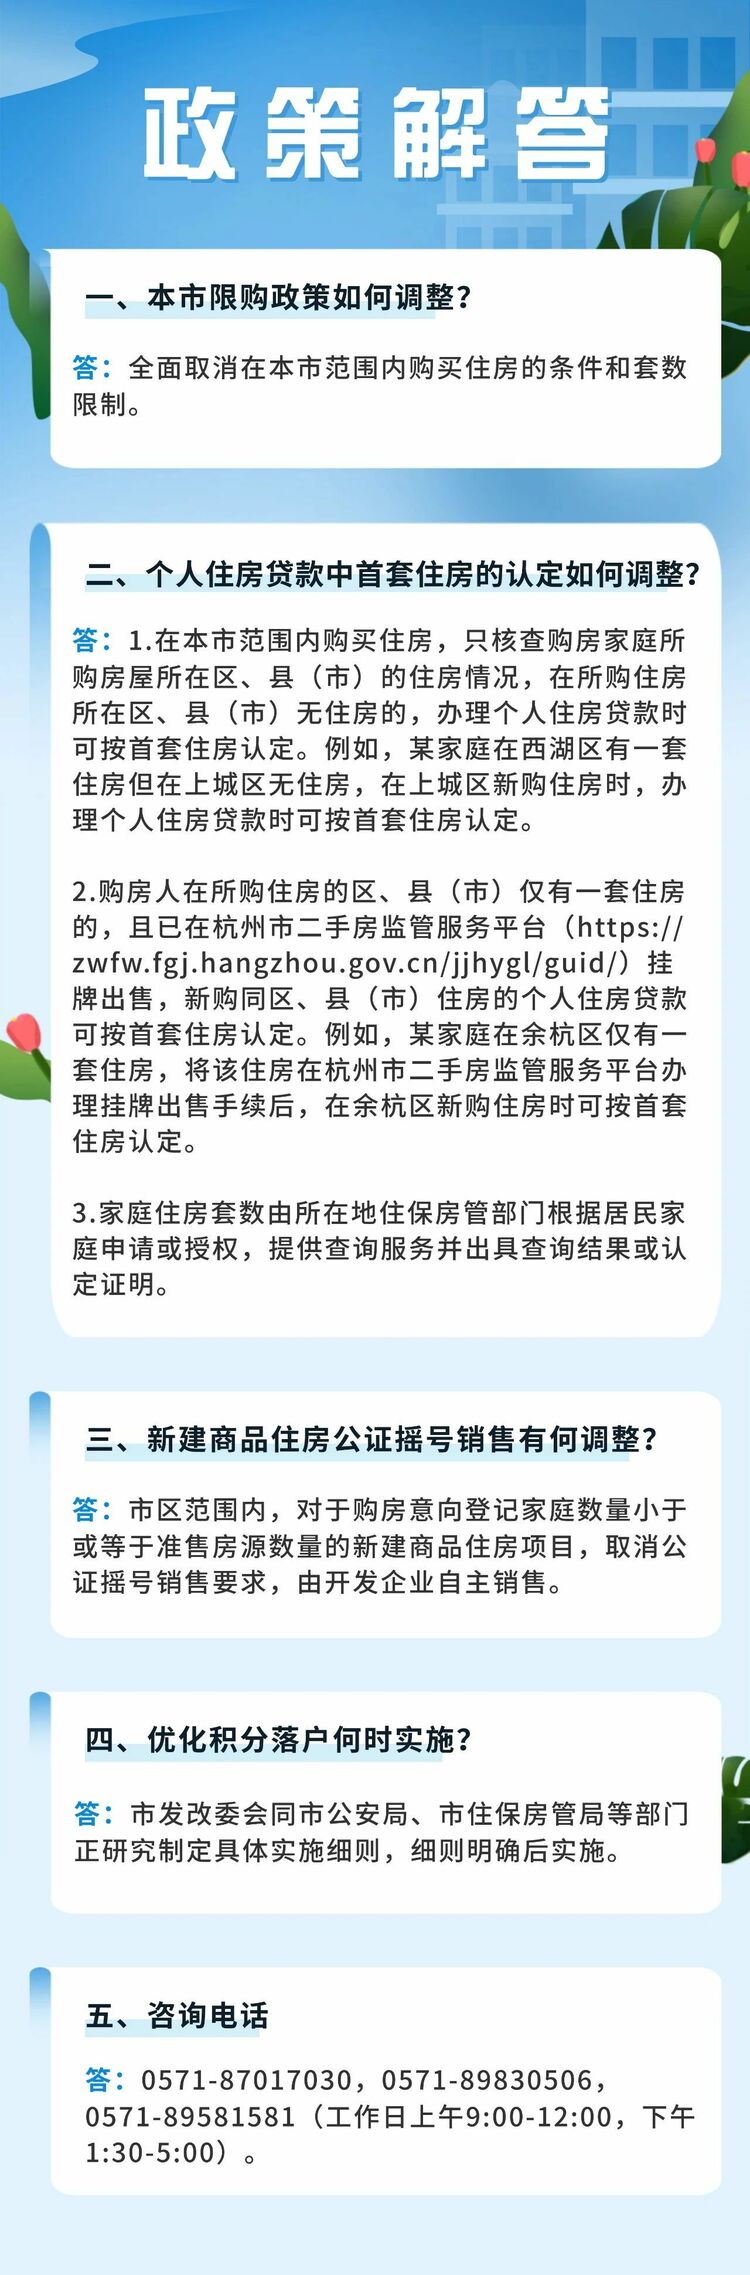 杭州：扫数废止住房限购 购房可申请落户